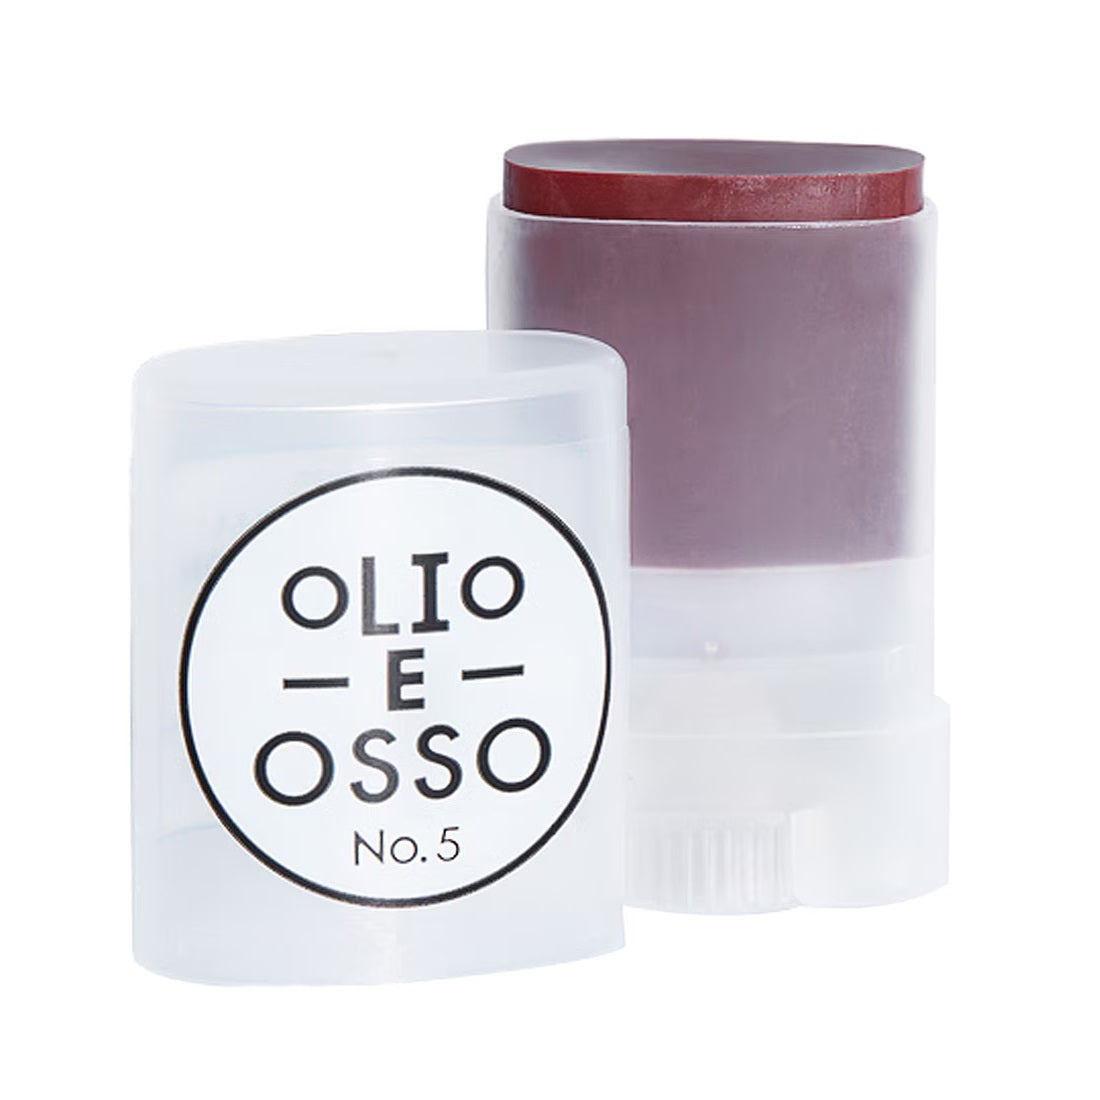 Olio E Osso Lip and Cheek Balm 10g - 5 Currant